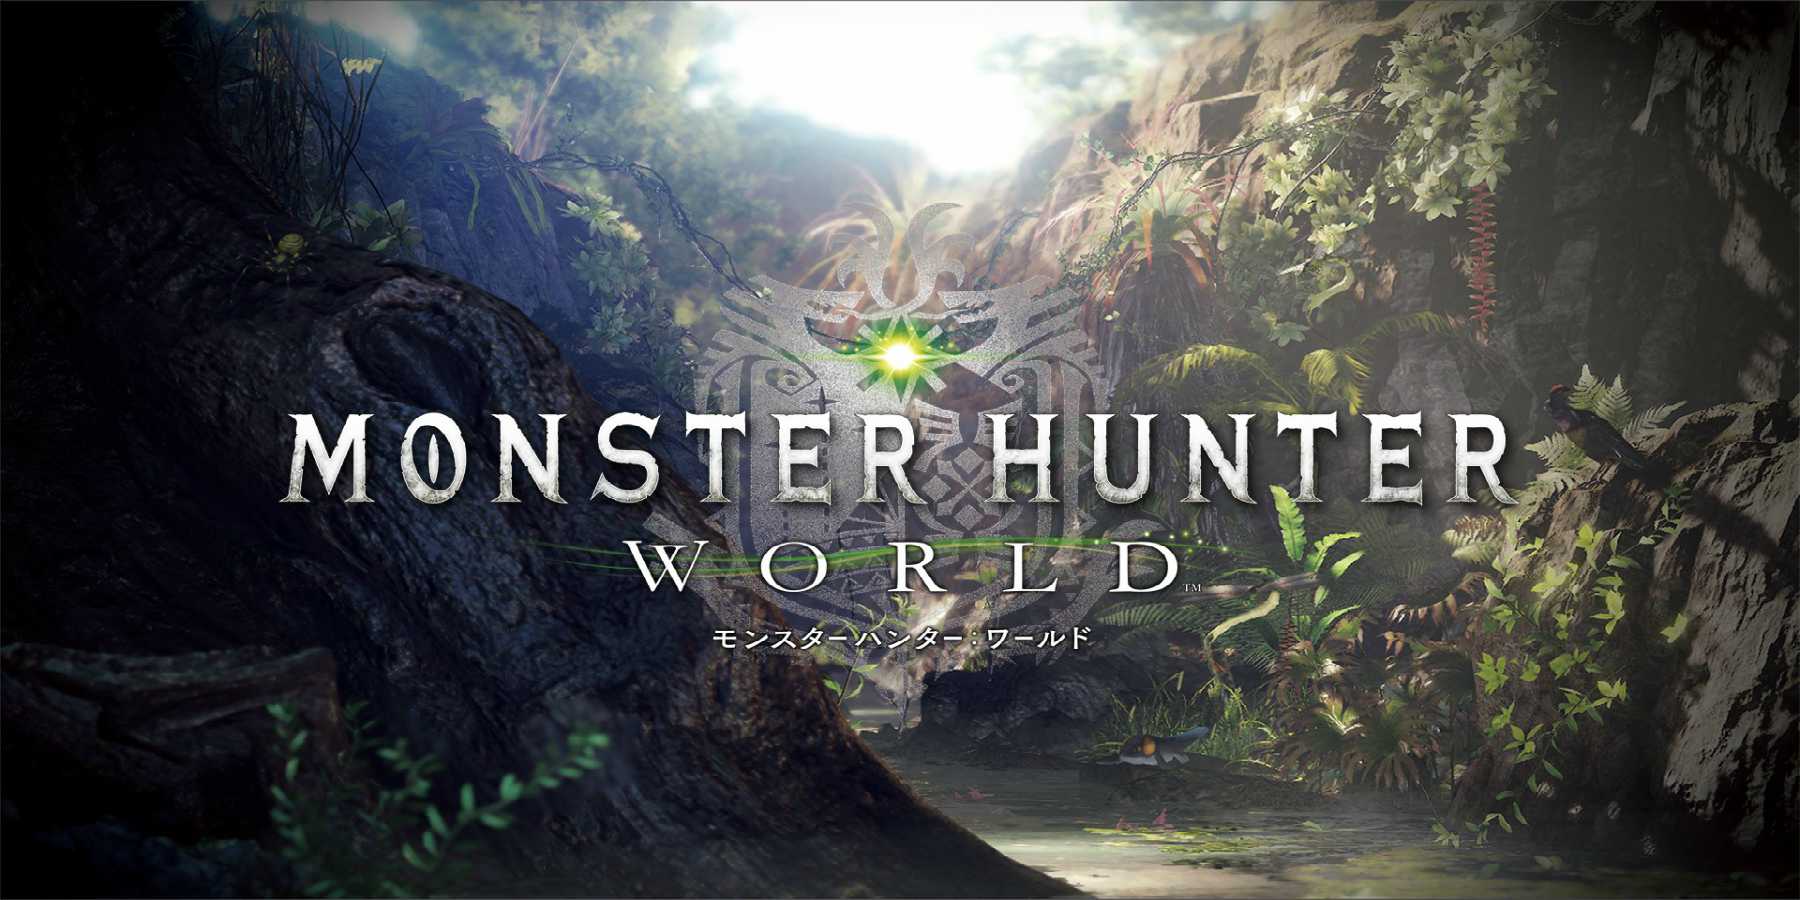 Monster Hunter World es el juego más vendido en toda la historia de Capcom